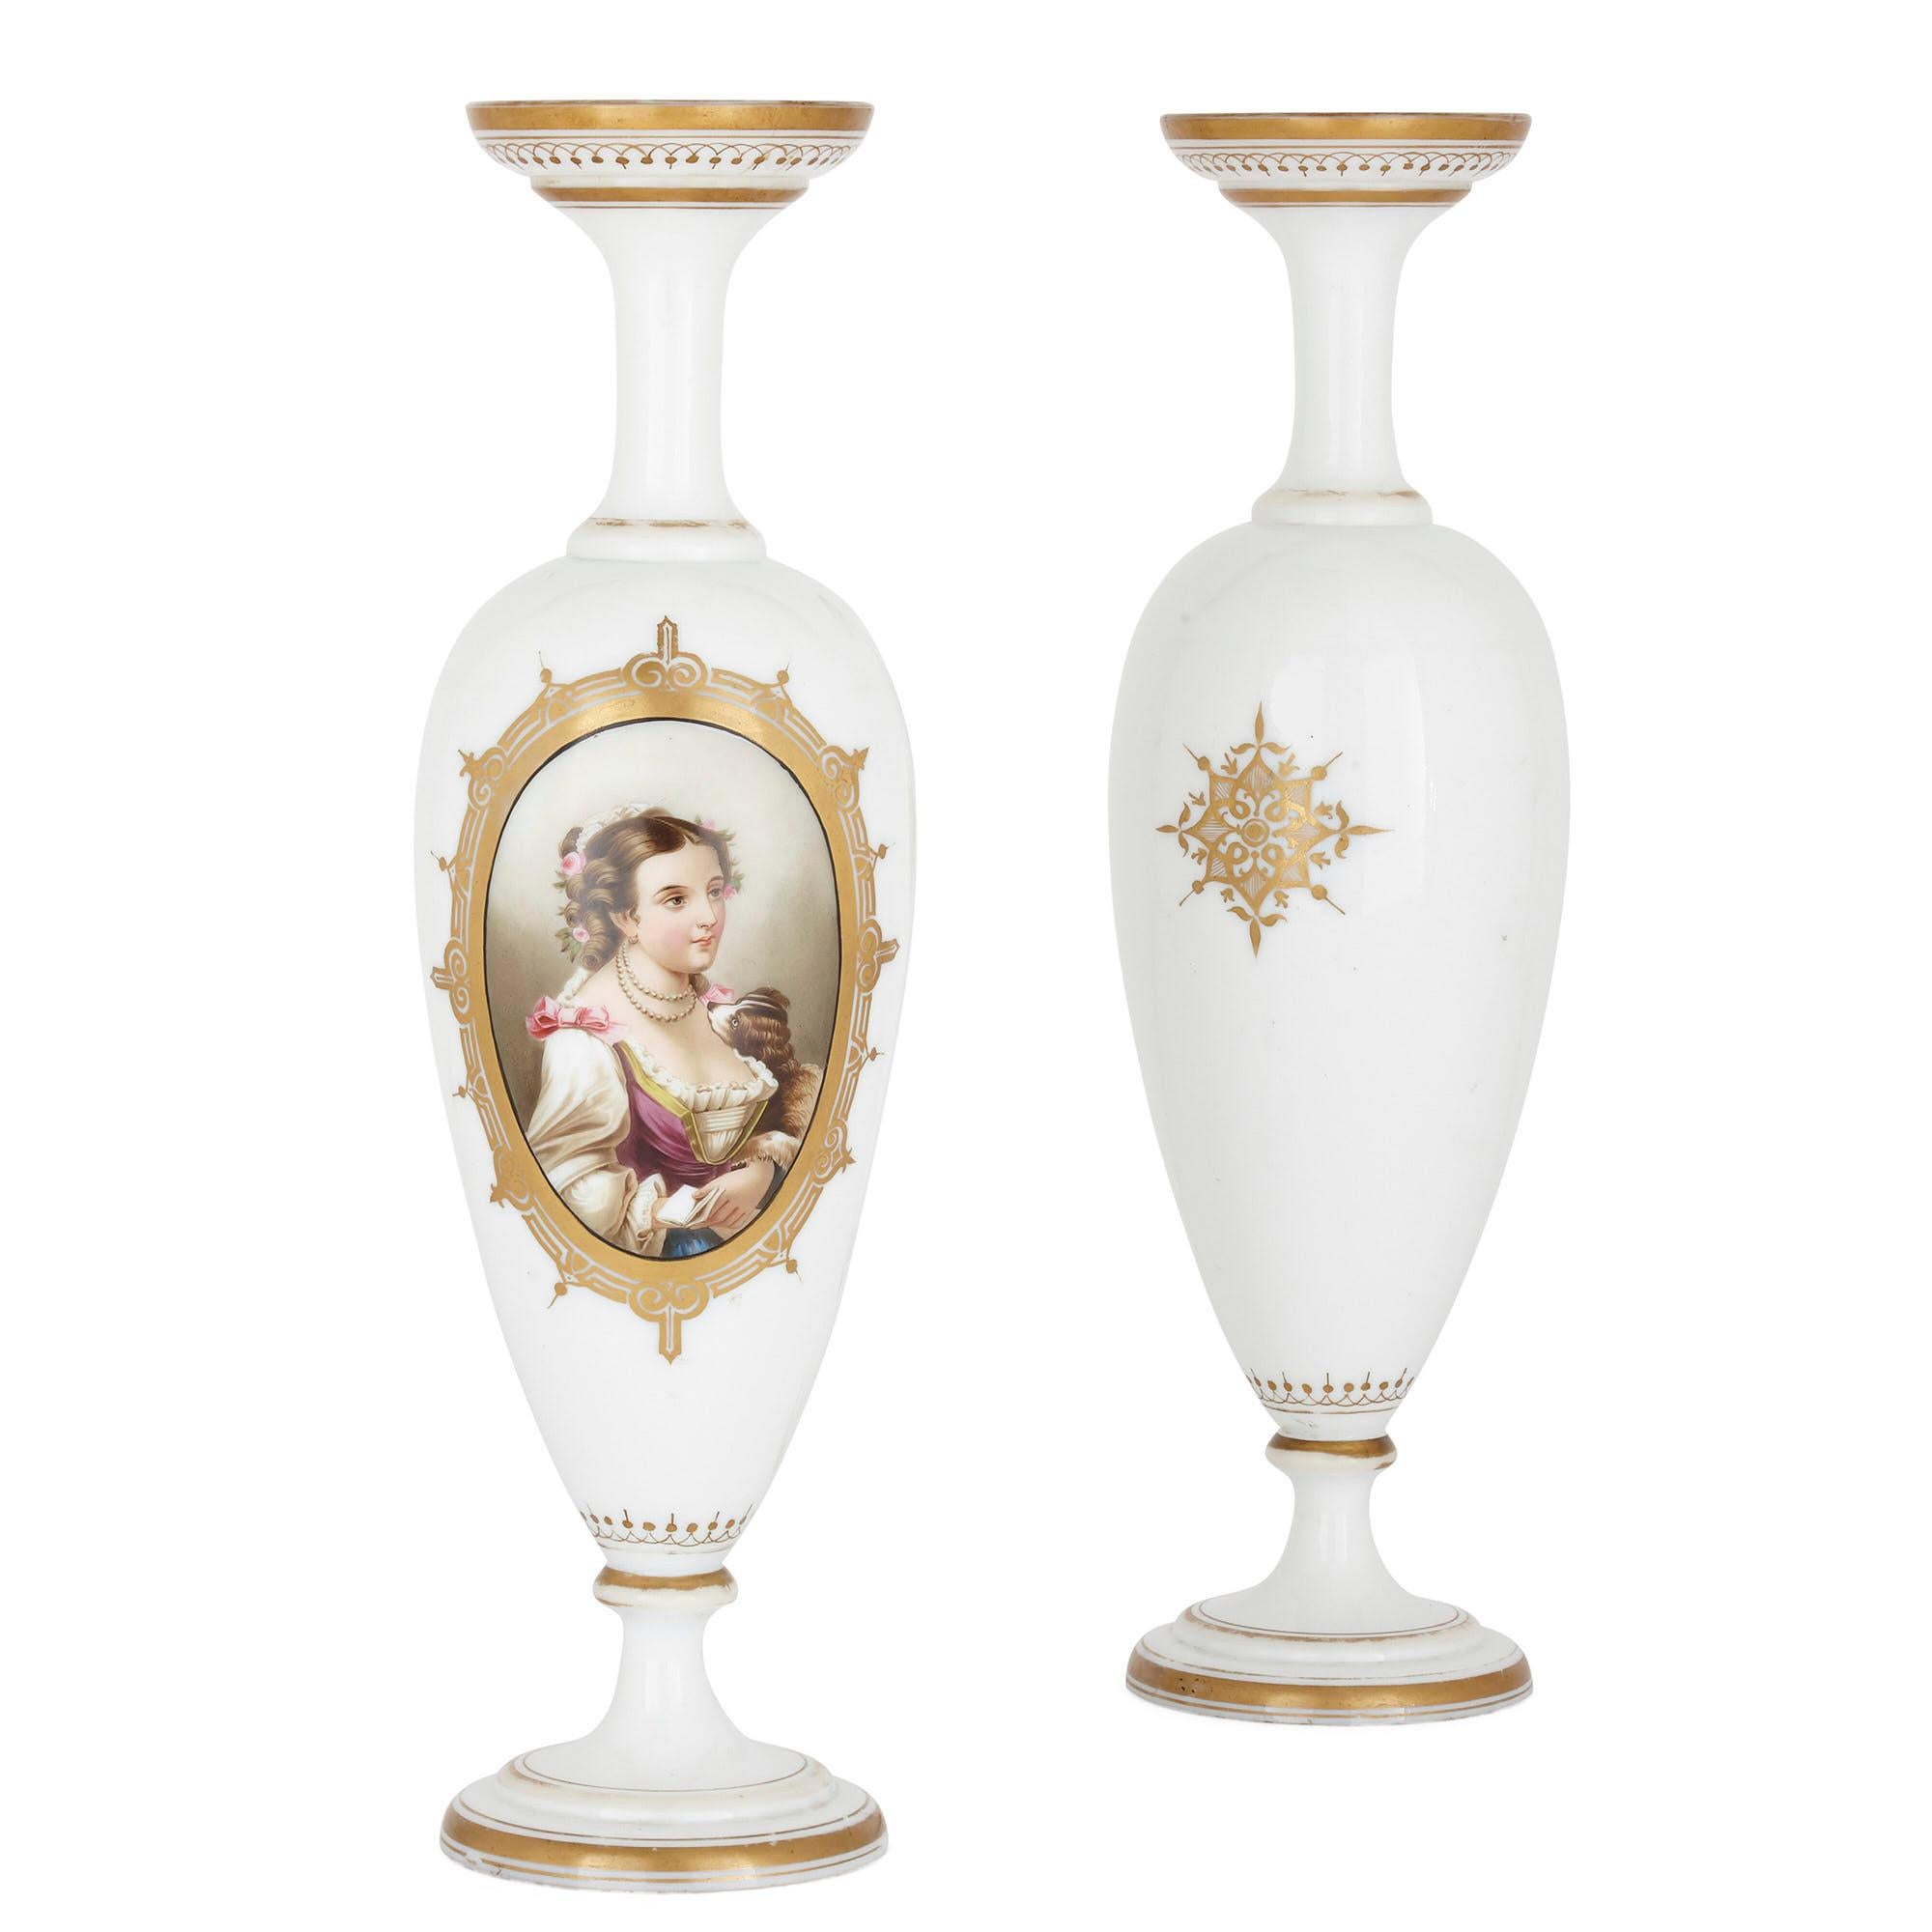 Paire de vases en verre français peints de portraits
Français, fin du XIXe siècle
Mesures : Hauteur 54 cm, diamètre 15 cm

Le verre opalin, ou verre opaque, souvent teinté d'une touche de couleur, est prisé depuis des siècles pour son élégante